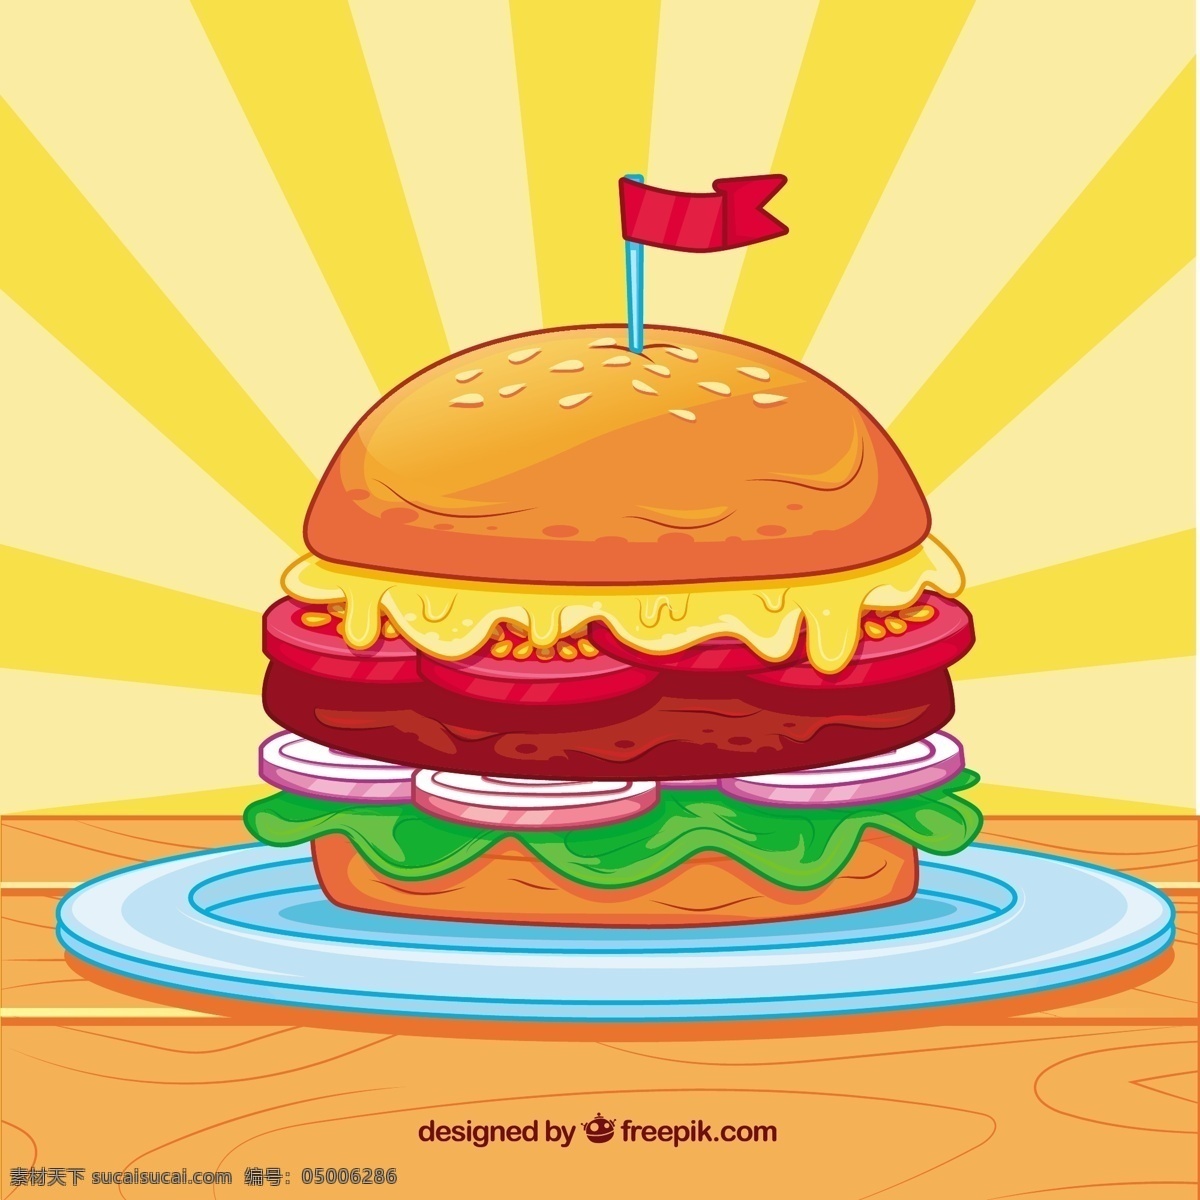 美味 汉堡 背景 食物 菜单 颜色 扁平 丰富多彩 快餐 平面设计 食物菜单 奶酪 汉堡包 番茄 午餐 小吃 餐 背景色